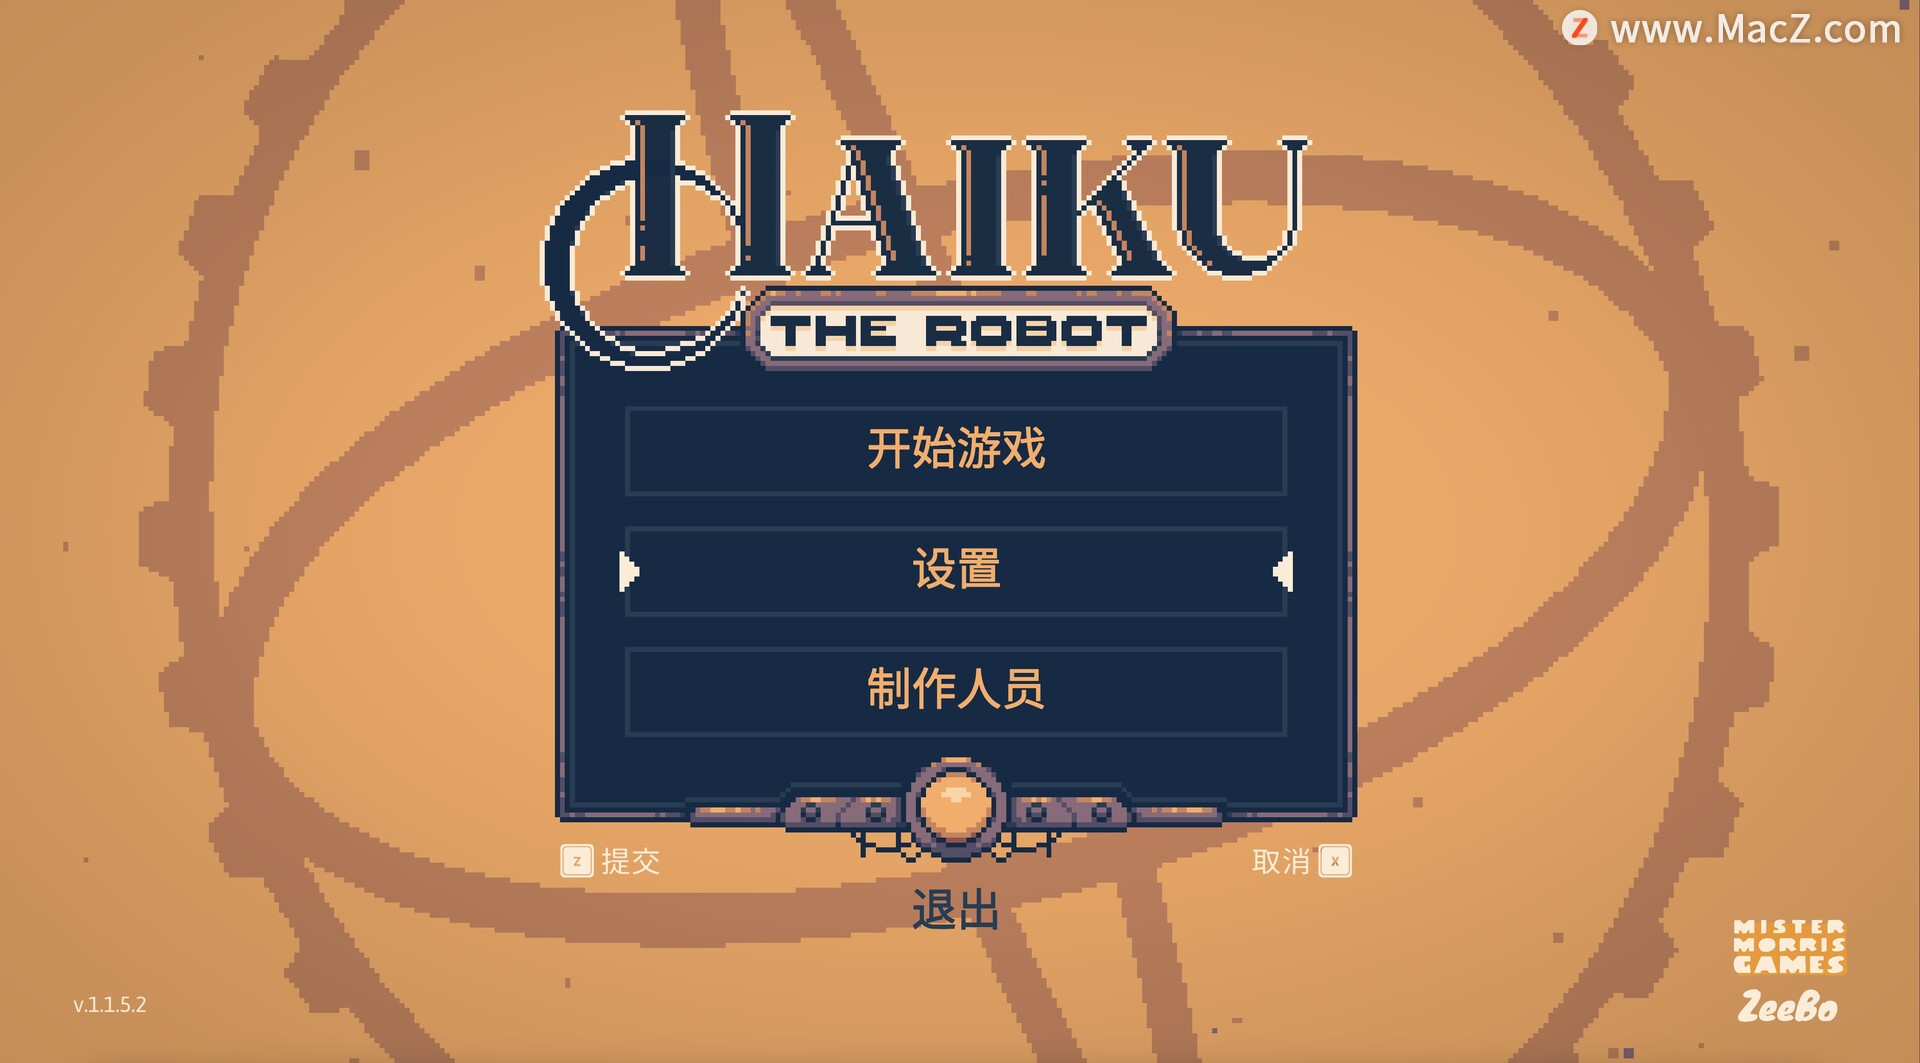 机器人海酷 Haiku, the Robot for mac(冒险探索游戏)